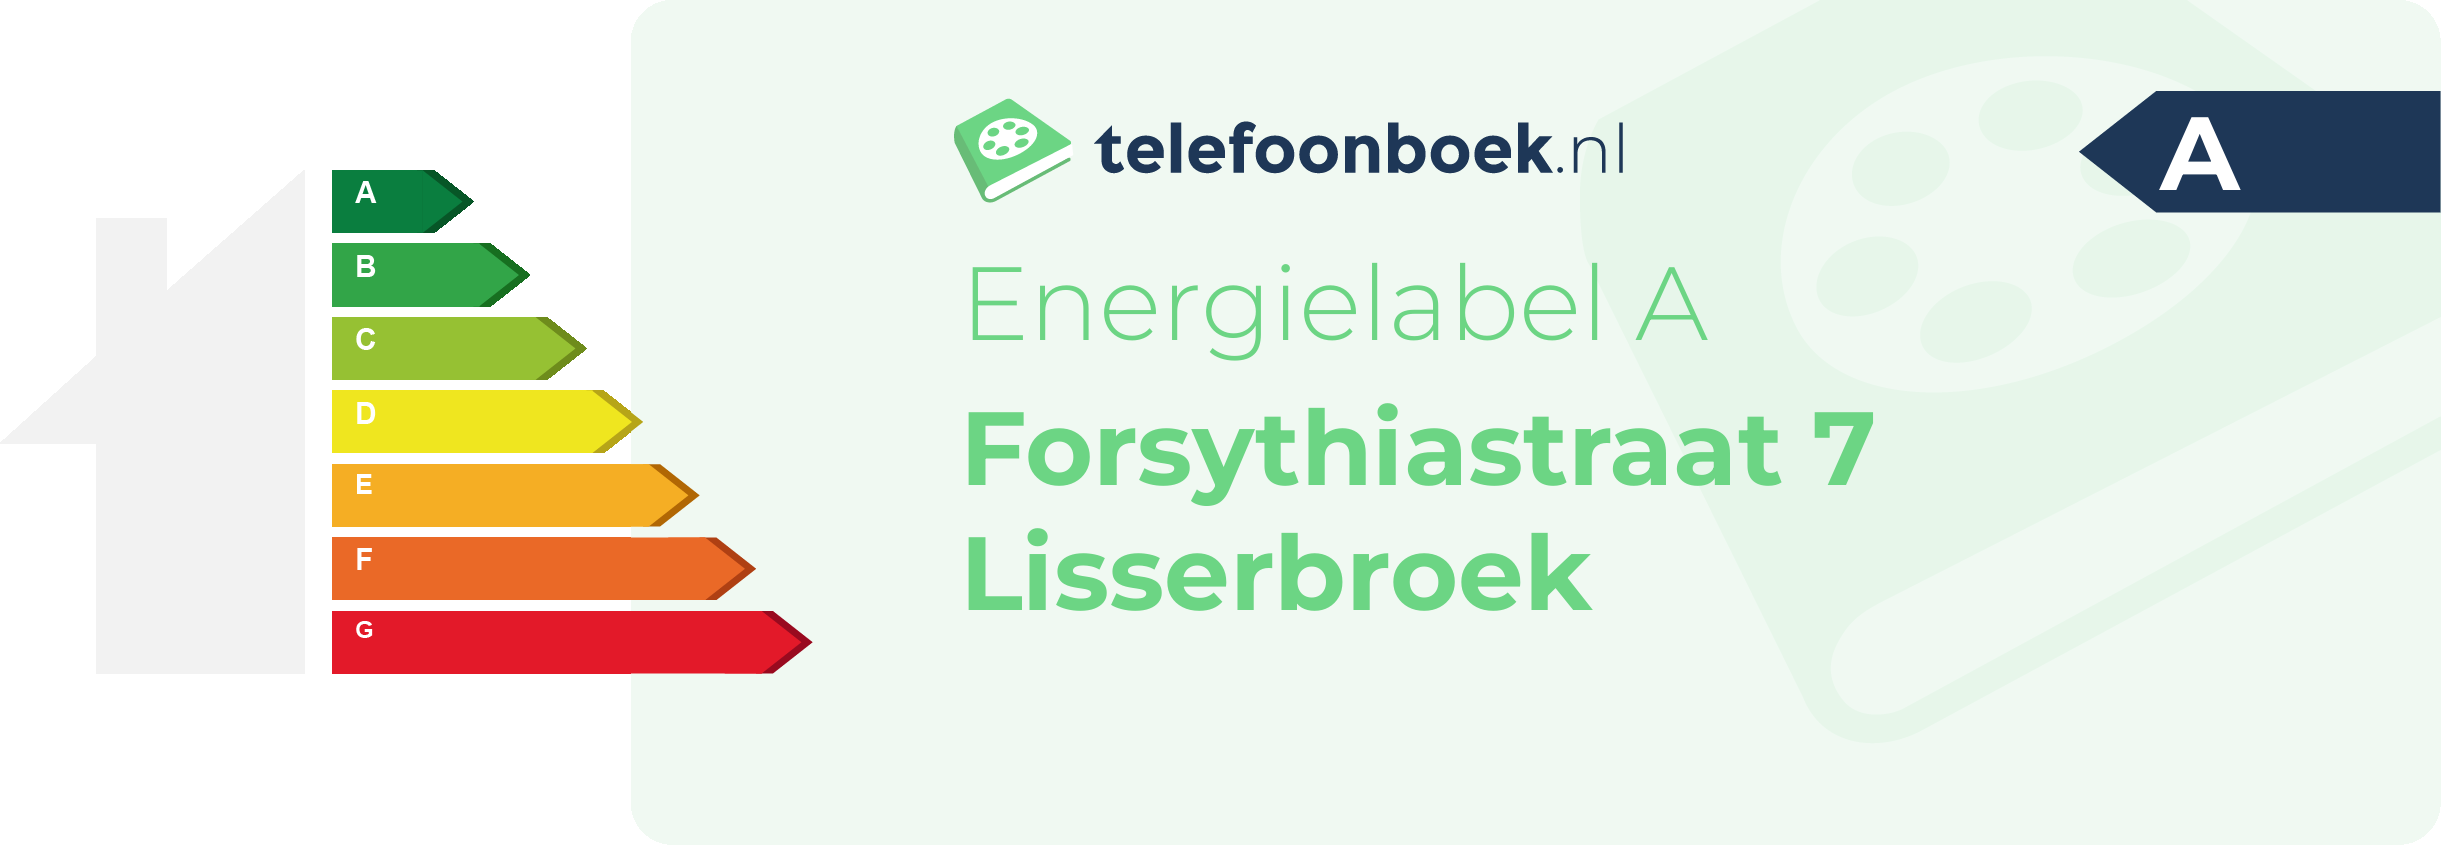 Energielabel Forsythiastraat 7 Lisserbroek